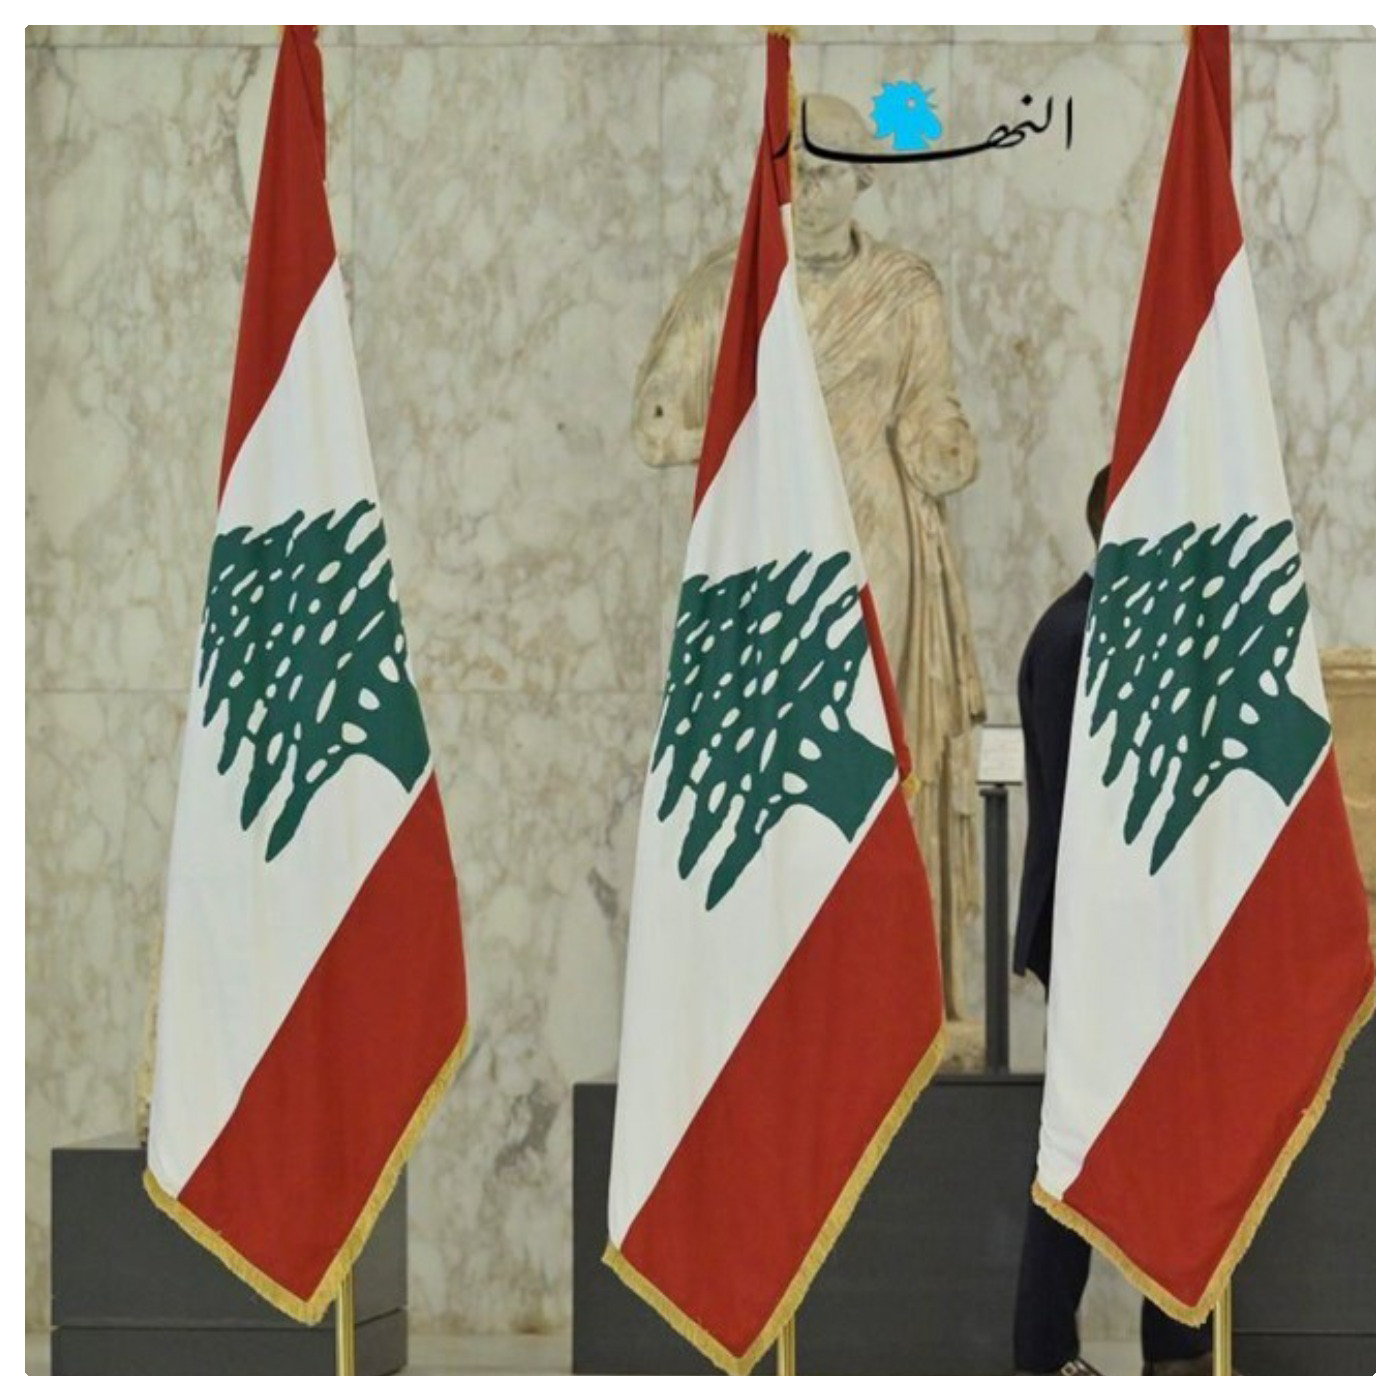 السبت 13 آب/ أغسطس 2022: لبنان يعبر إلى الاستحقاق الرئاسي... بلا دولة!